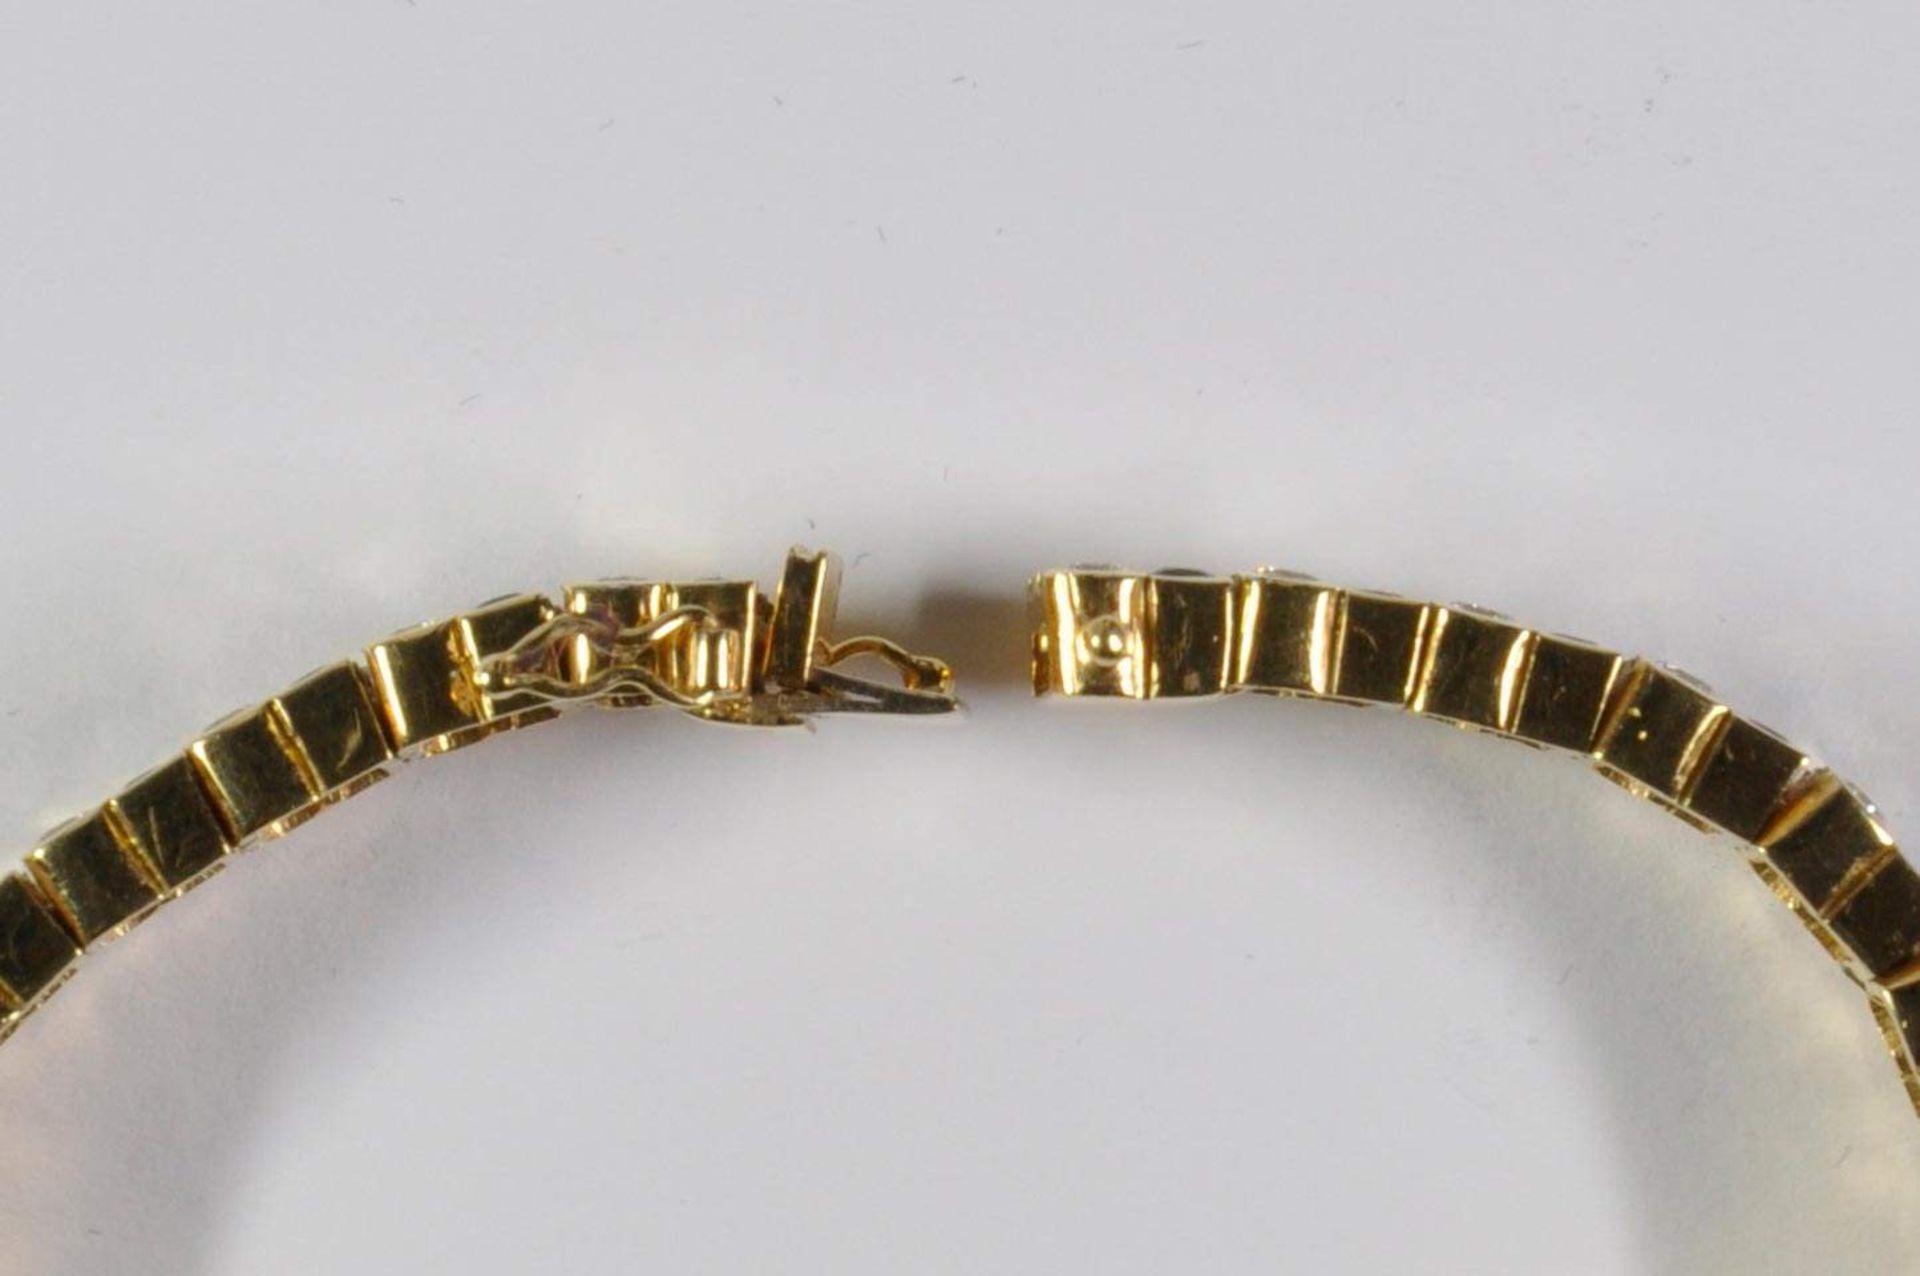 Saphir-Brillant-Armband, 750 Gelbgold, Punze, 66 Brillanten von zus. ca. 3,2ct, 64 Saphiren von zus. - Bild 14 aus 20